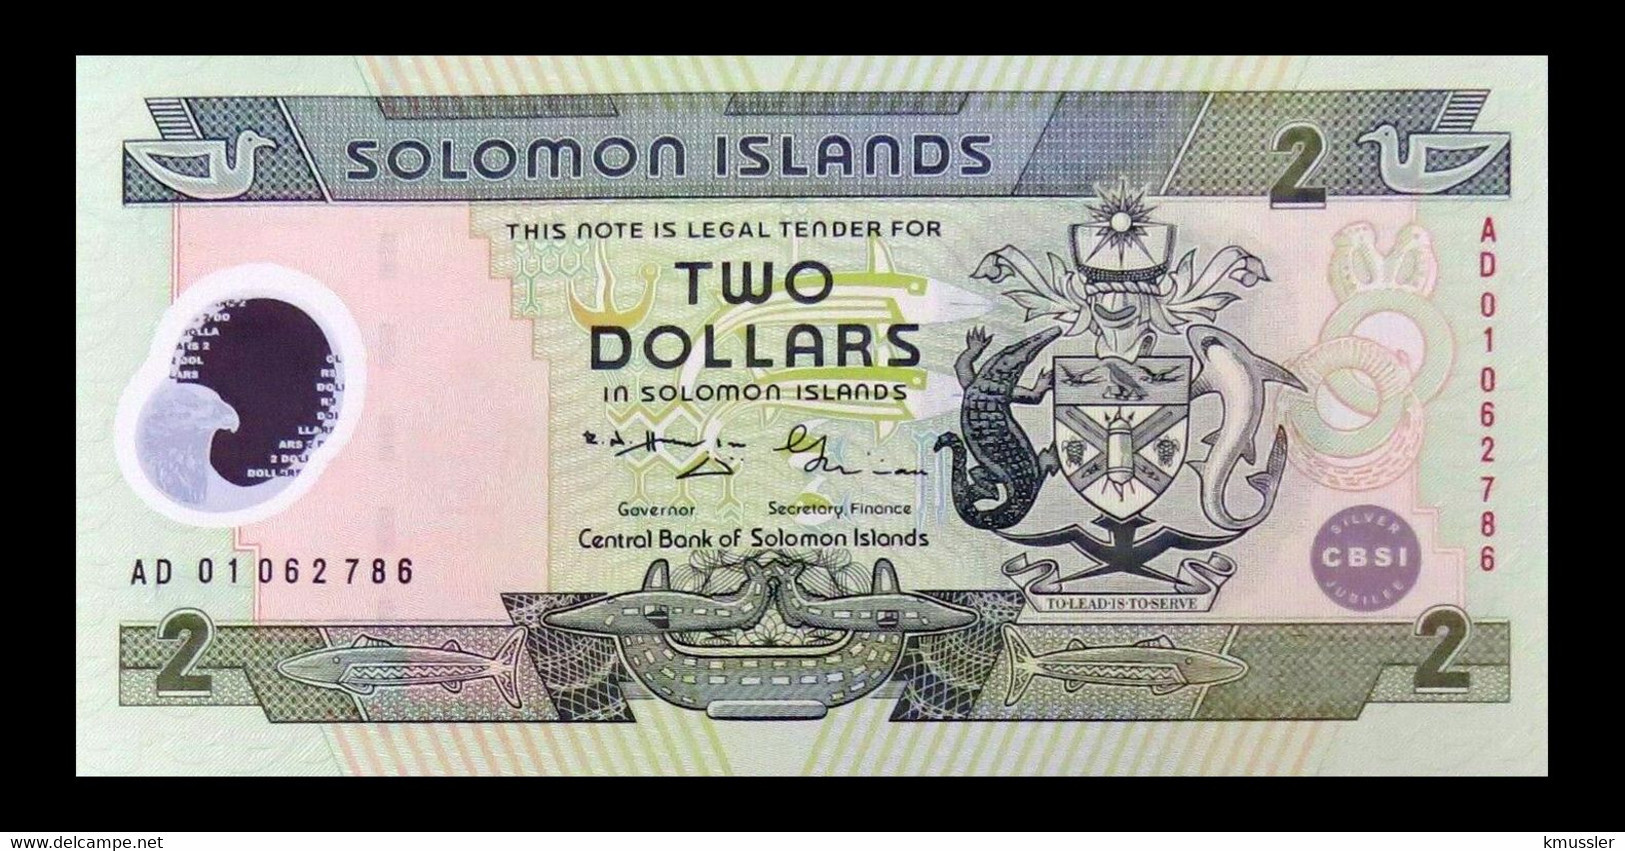 # # # Banknote Von Den Solomon-Inseln 2 Dollars UNC # # # - Solomon Islands